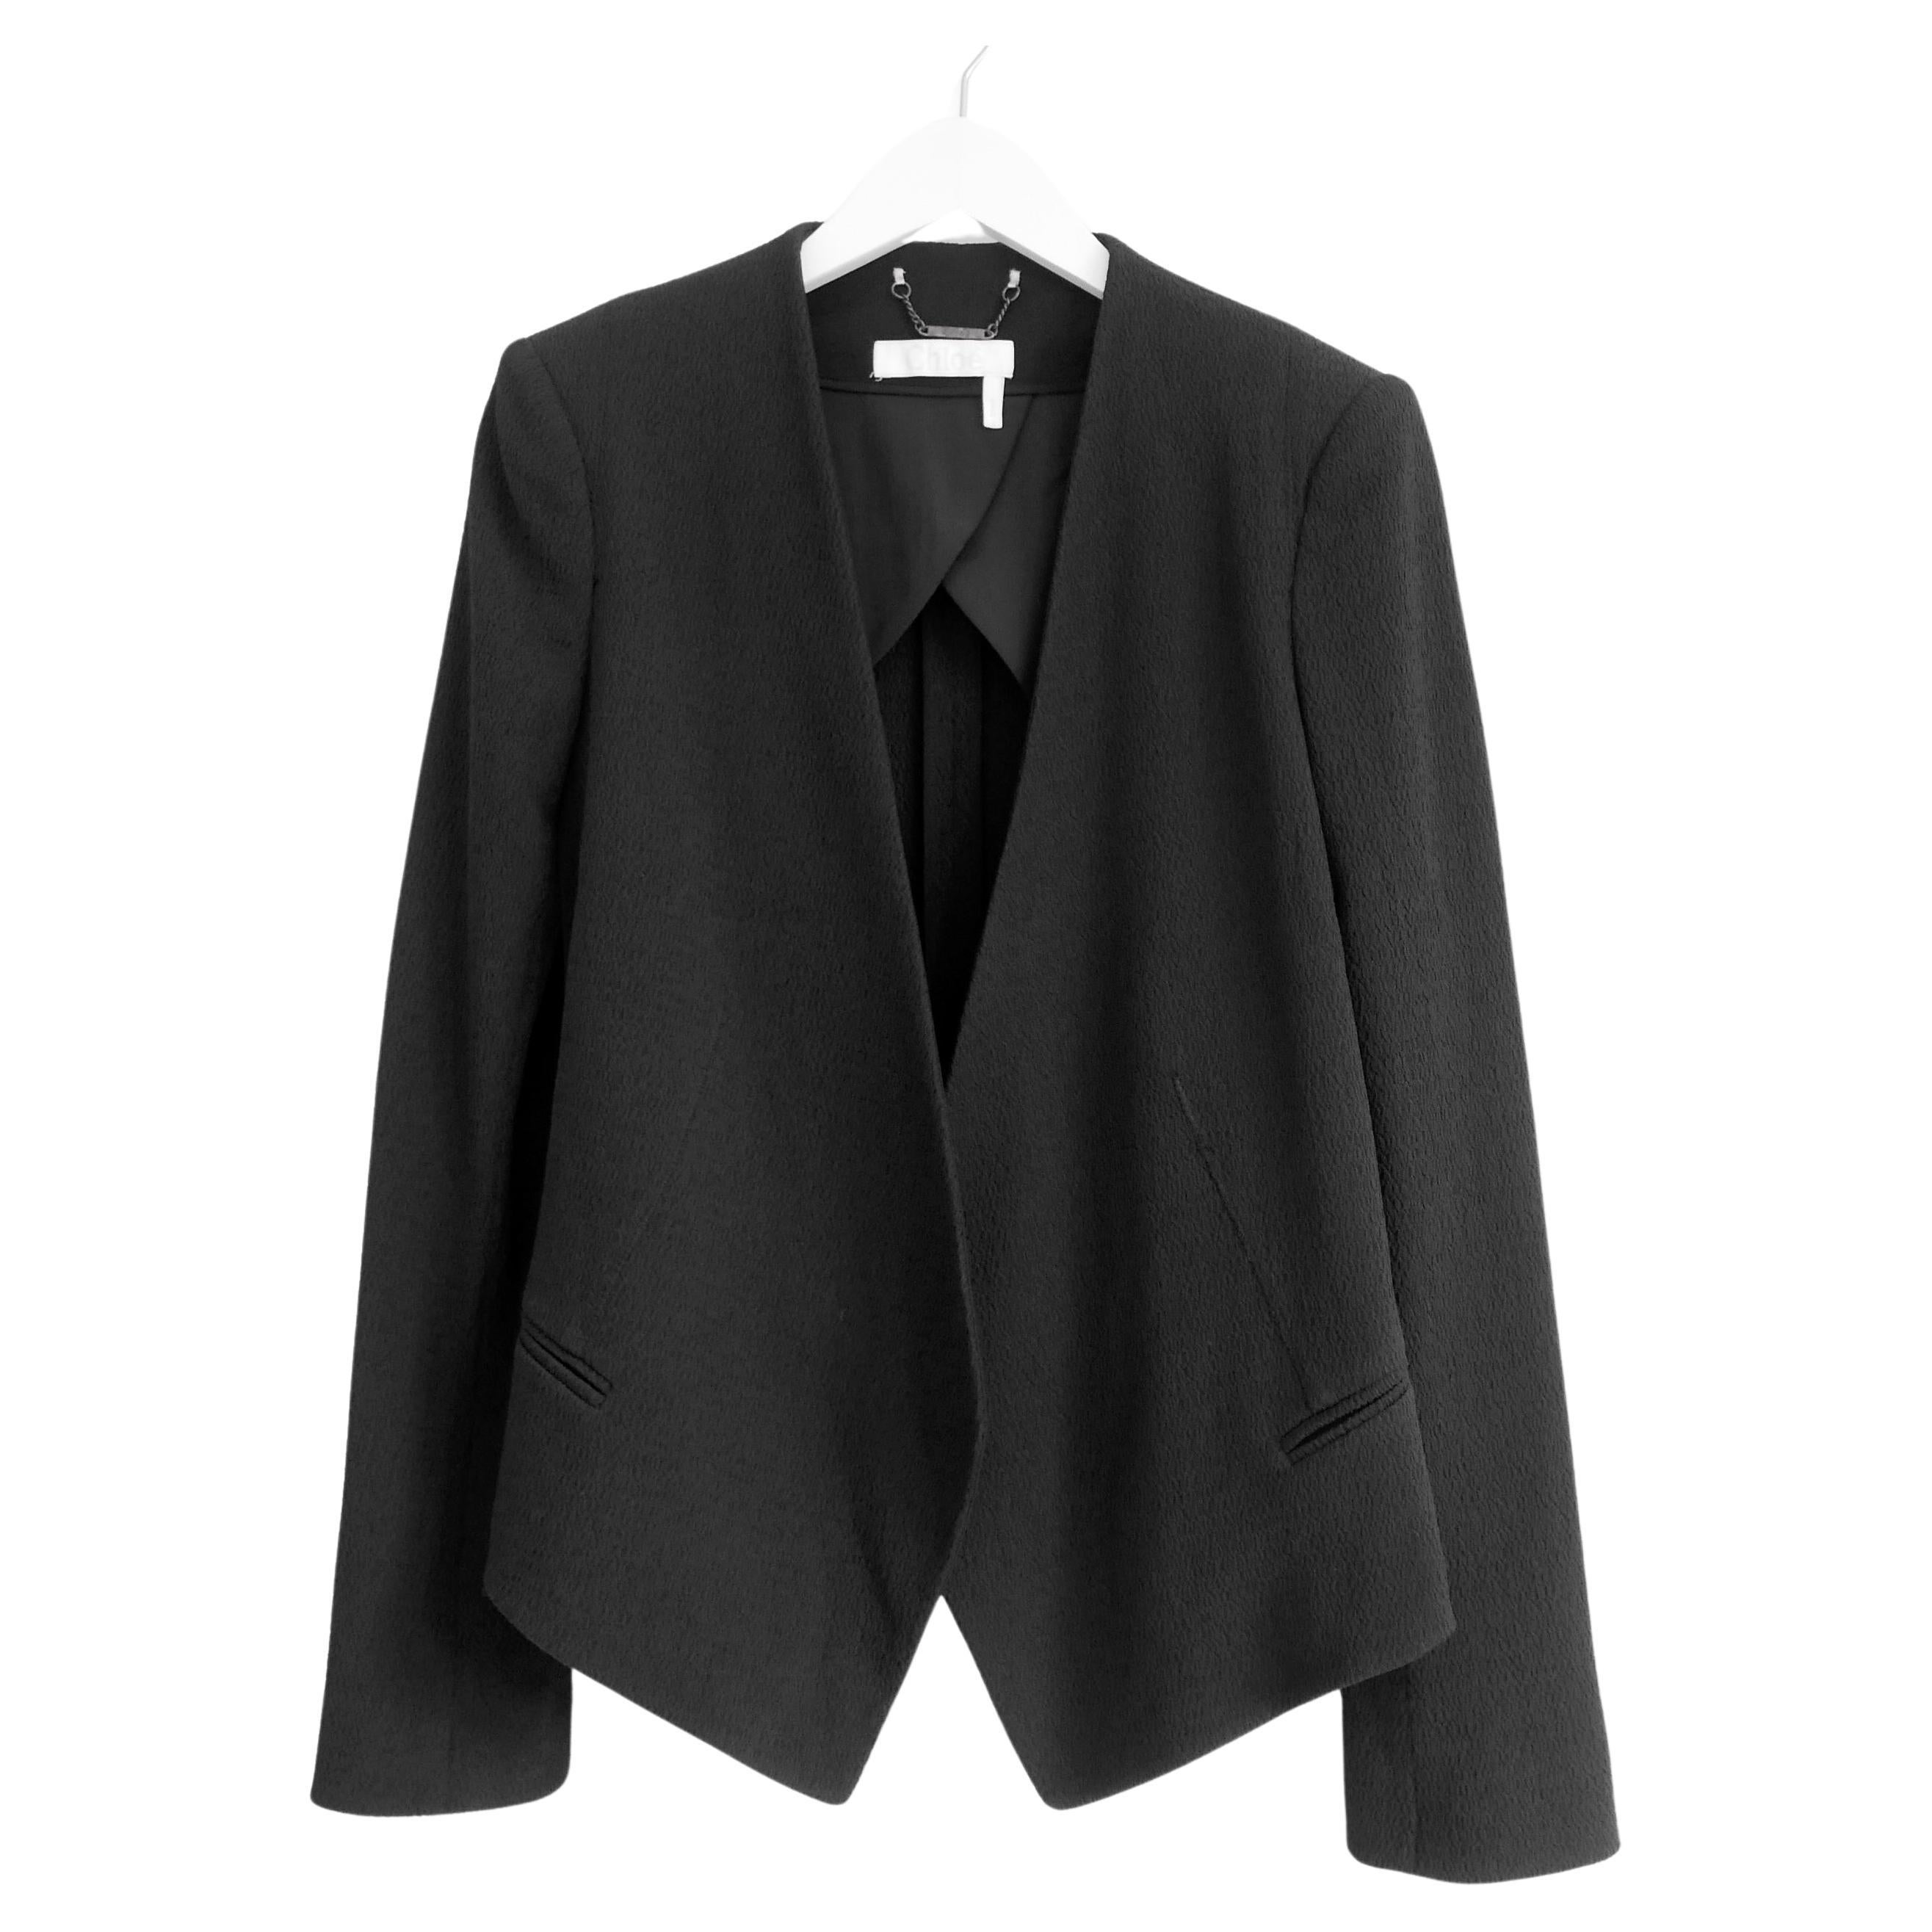 Chloe black textured tuxedo inspired jacket blazer For Sale